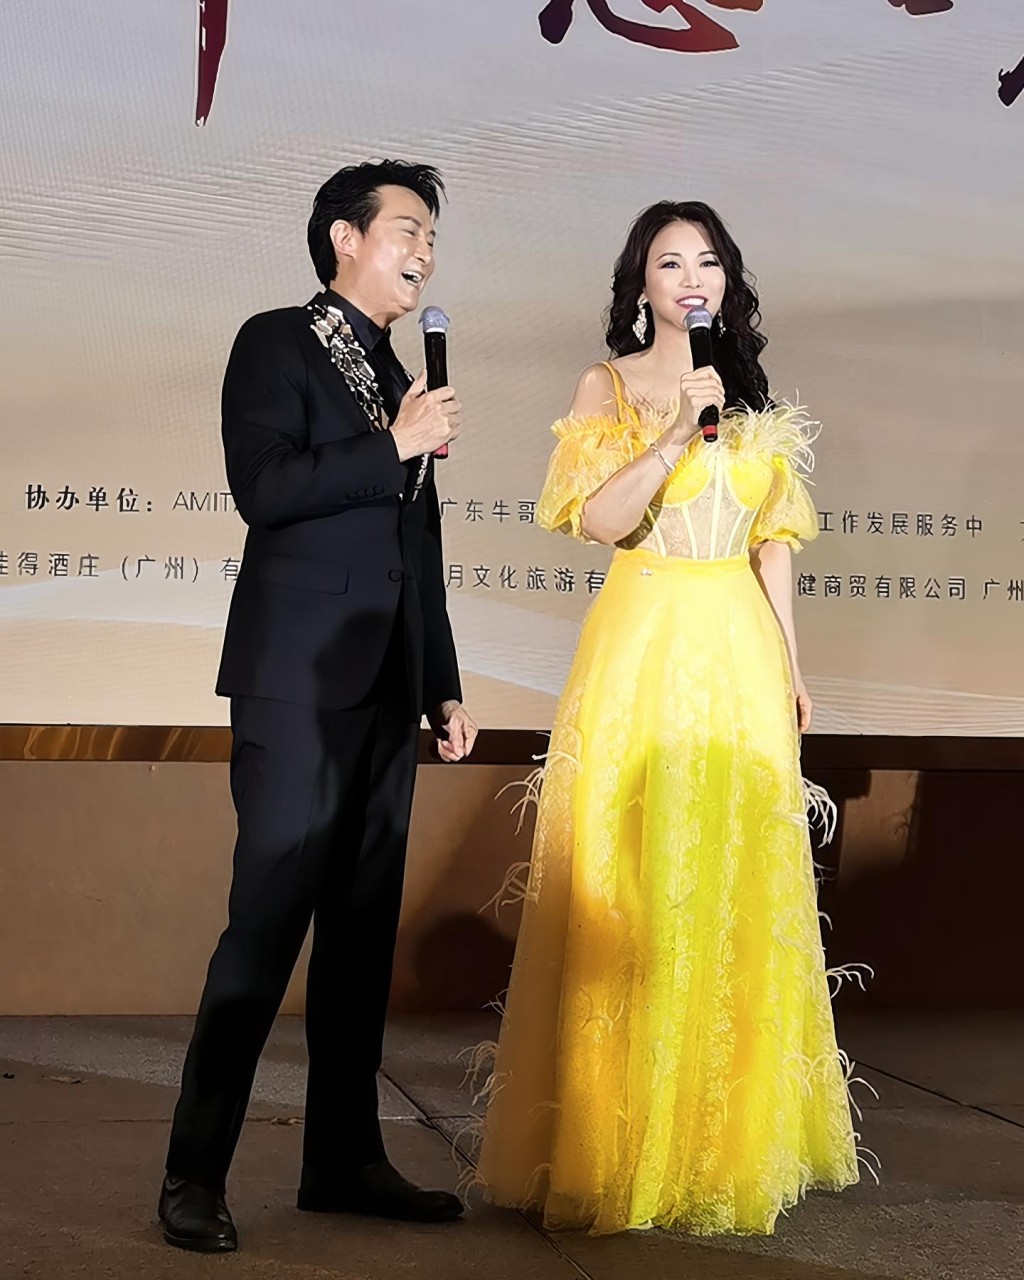 陈雅伦与刘锡明在台上谈笑风生。